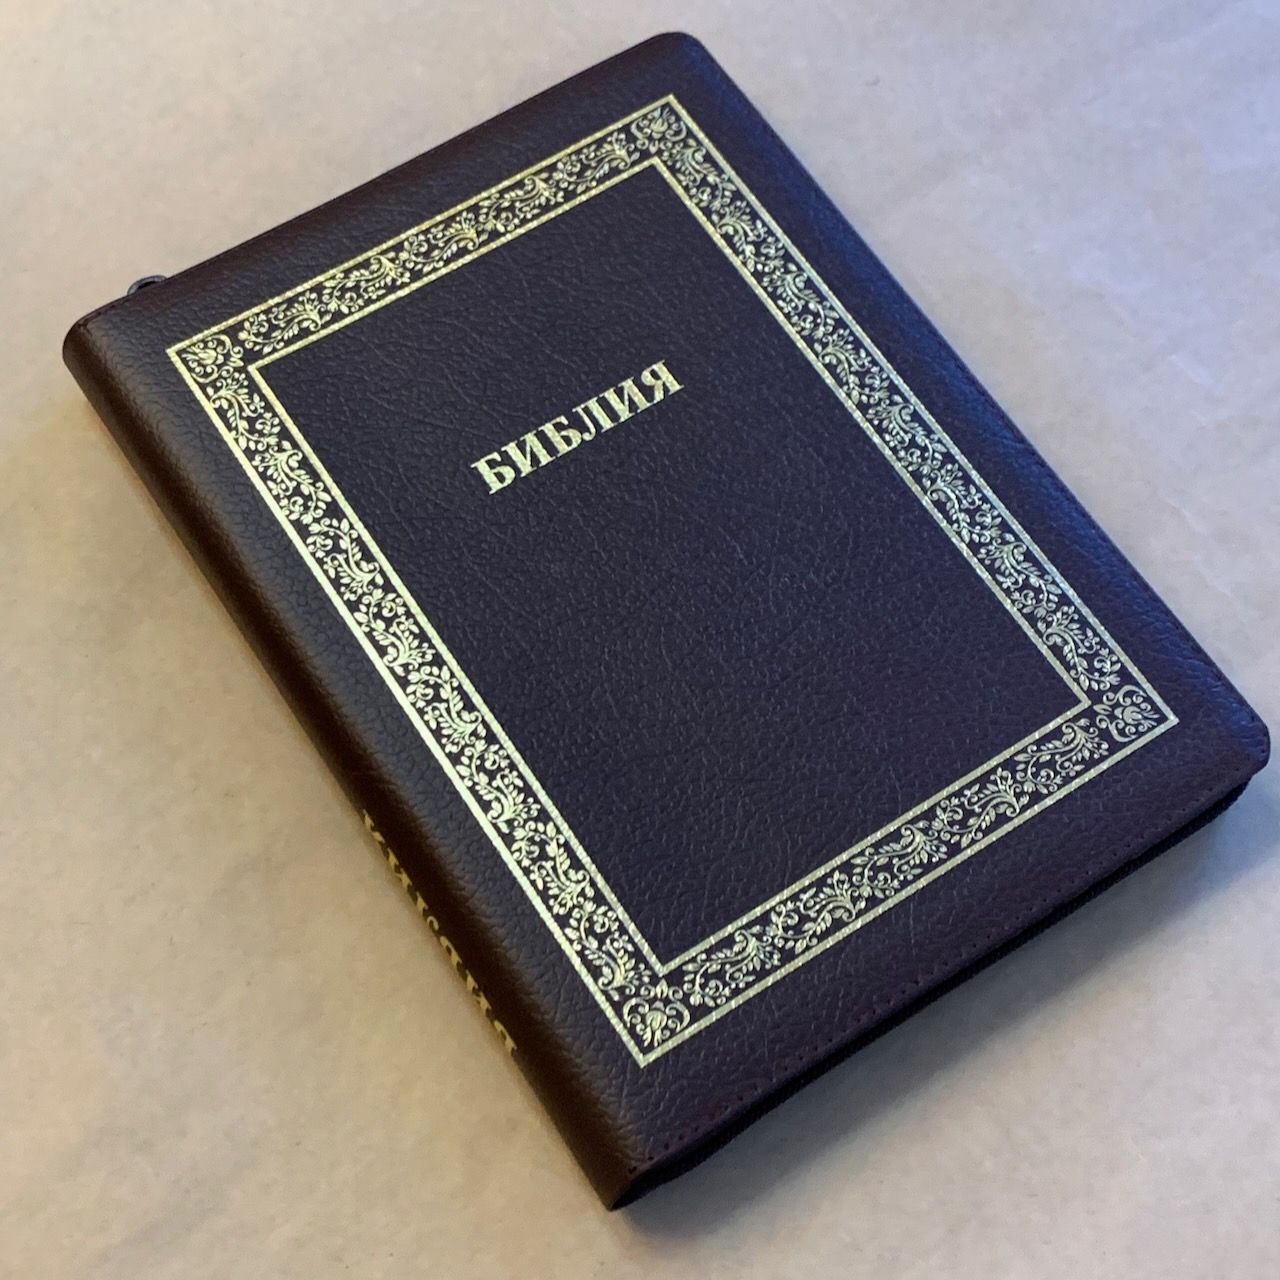 Библия 076zti код C9, дизайн "золотая рамка растительный орнамент", кожаный переплет на молнии с индексами, цвет коричневый пятнистый, размер 180x243 мм